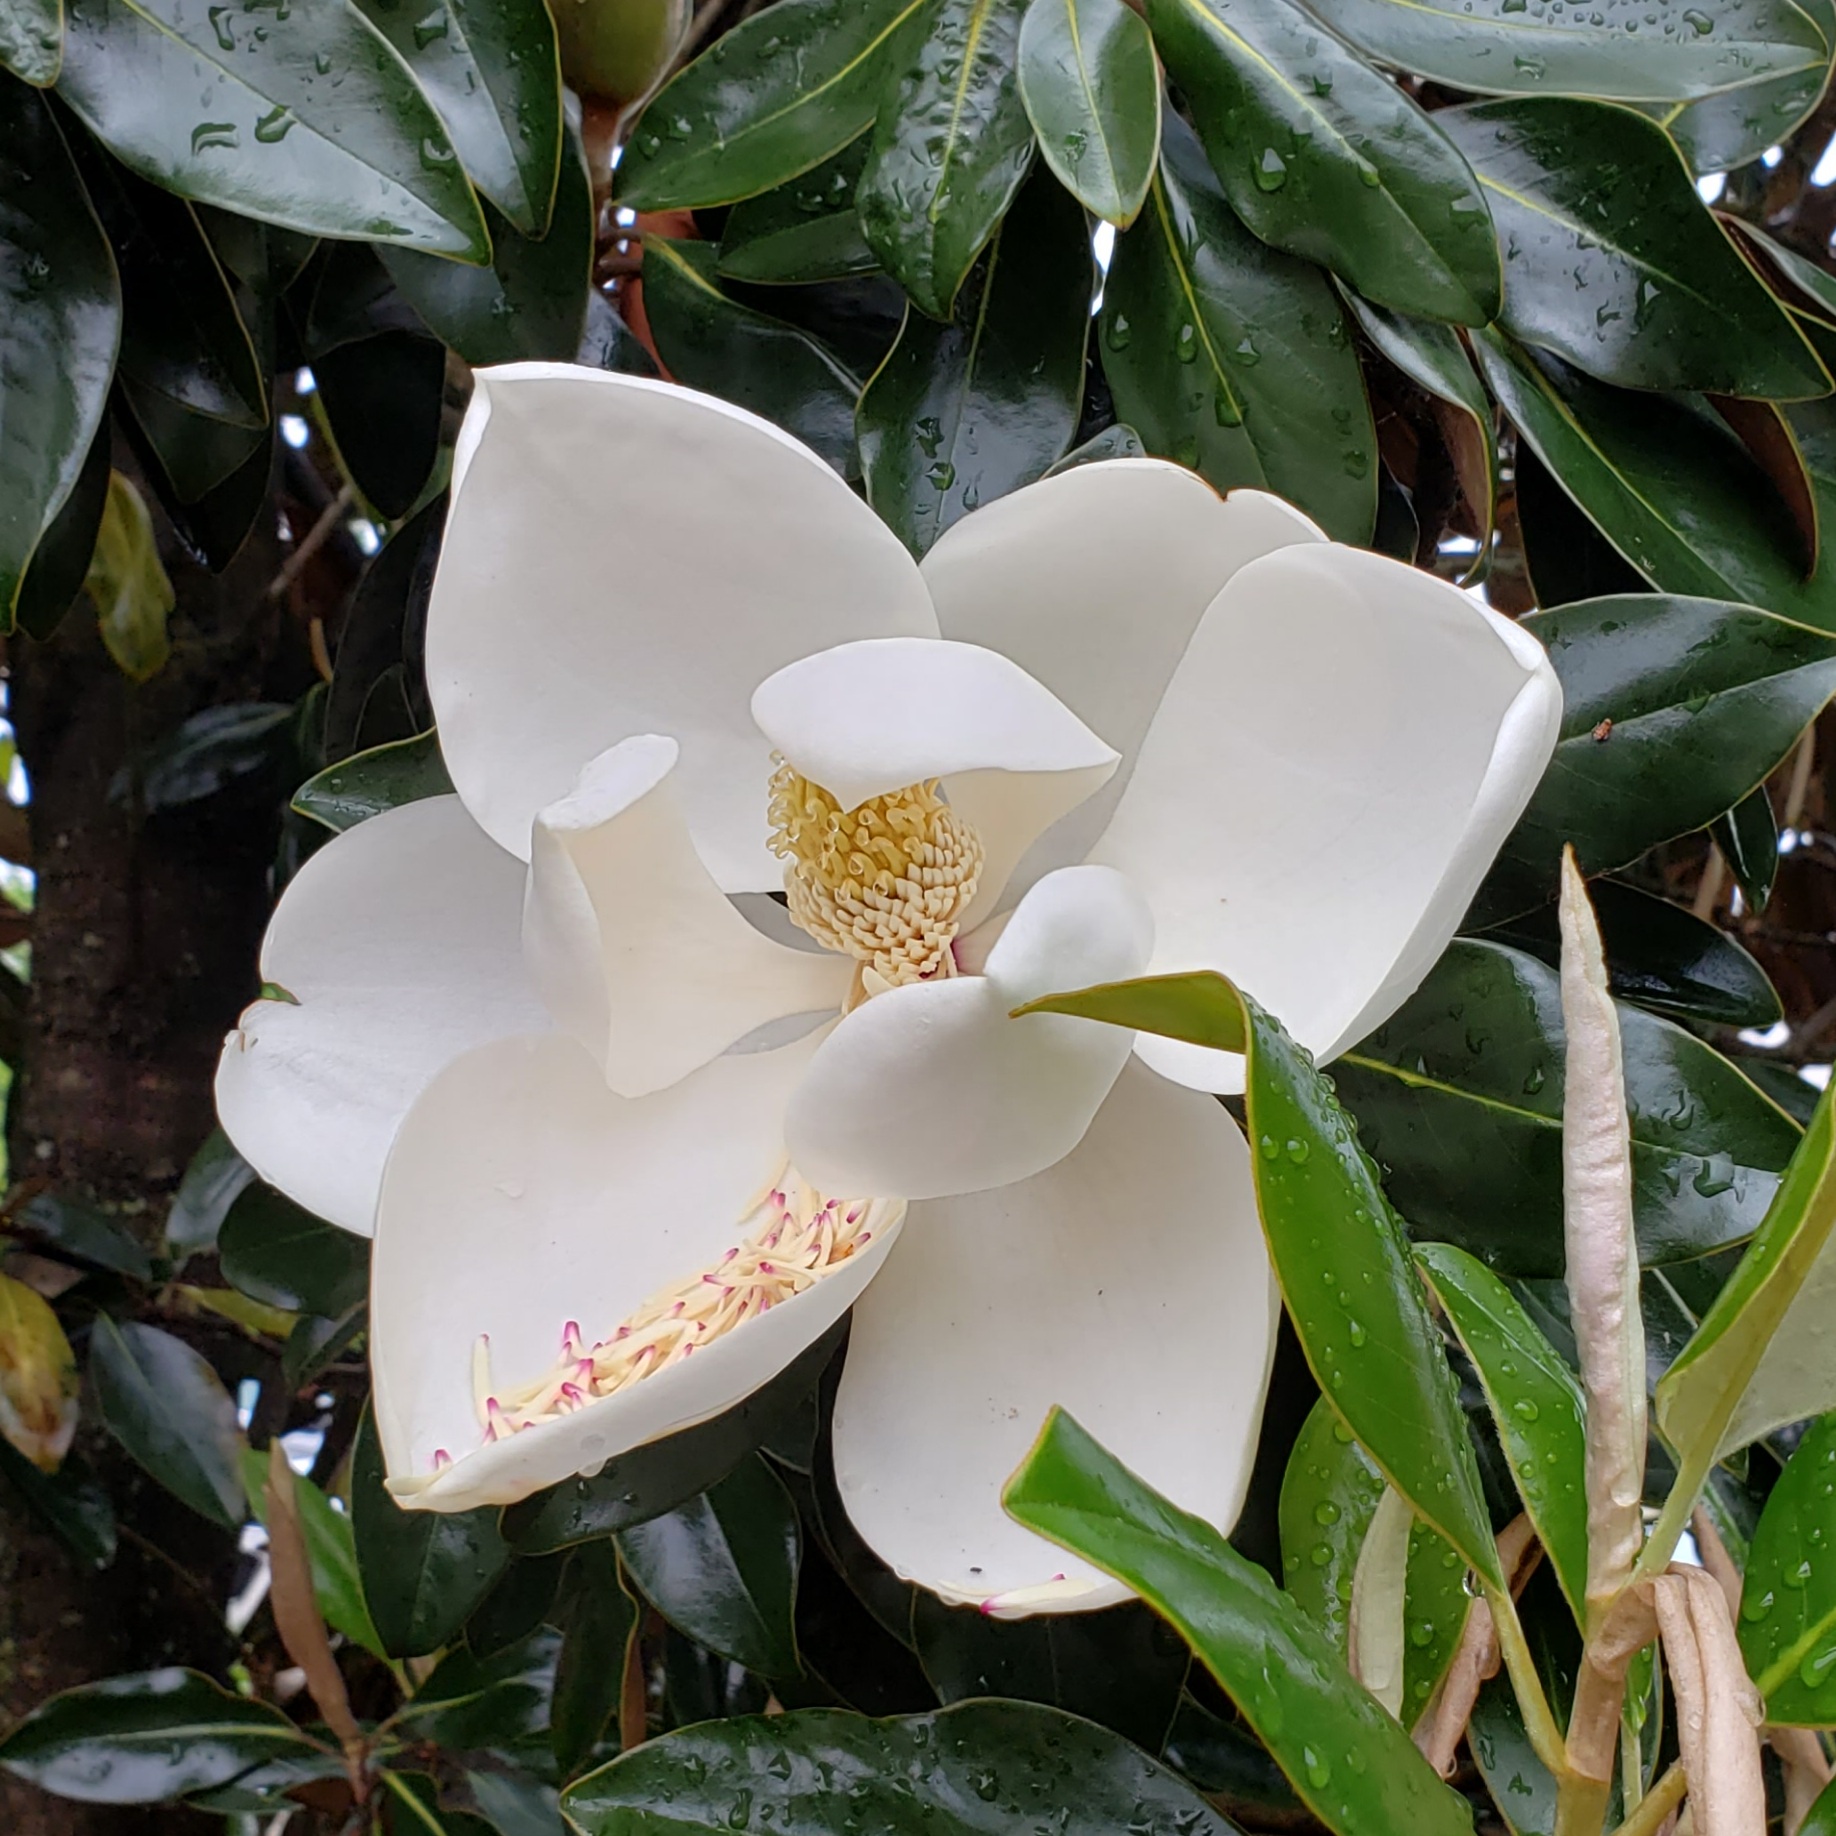 アメリカ南部の夏の花 マグノリア Magnolia はミシシッピの州花です 今日のアメリカ 今日のパン アメリカ南部専業主婦日記